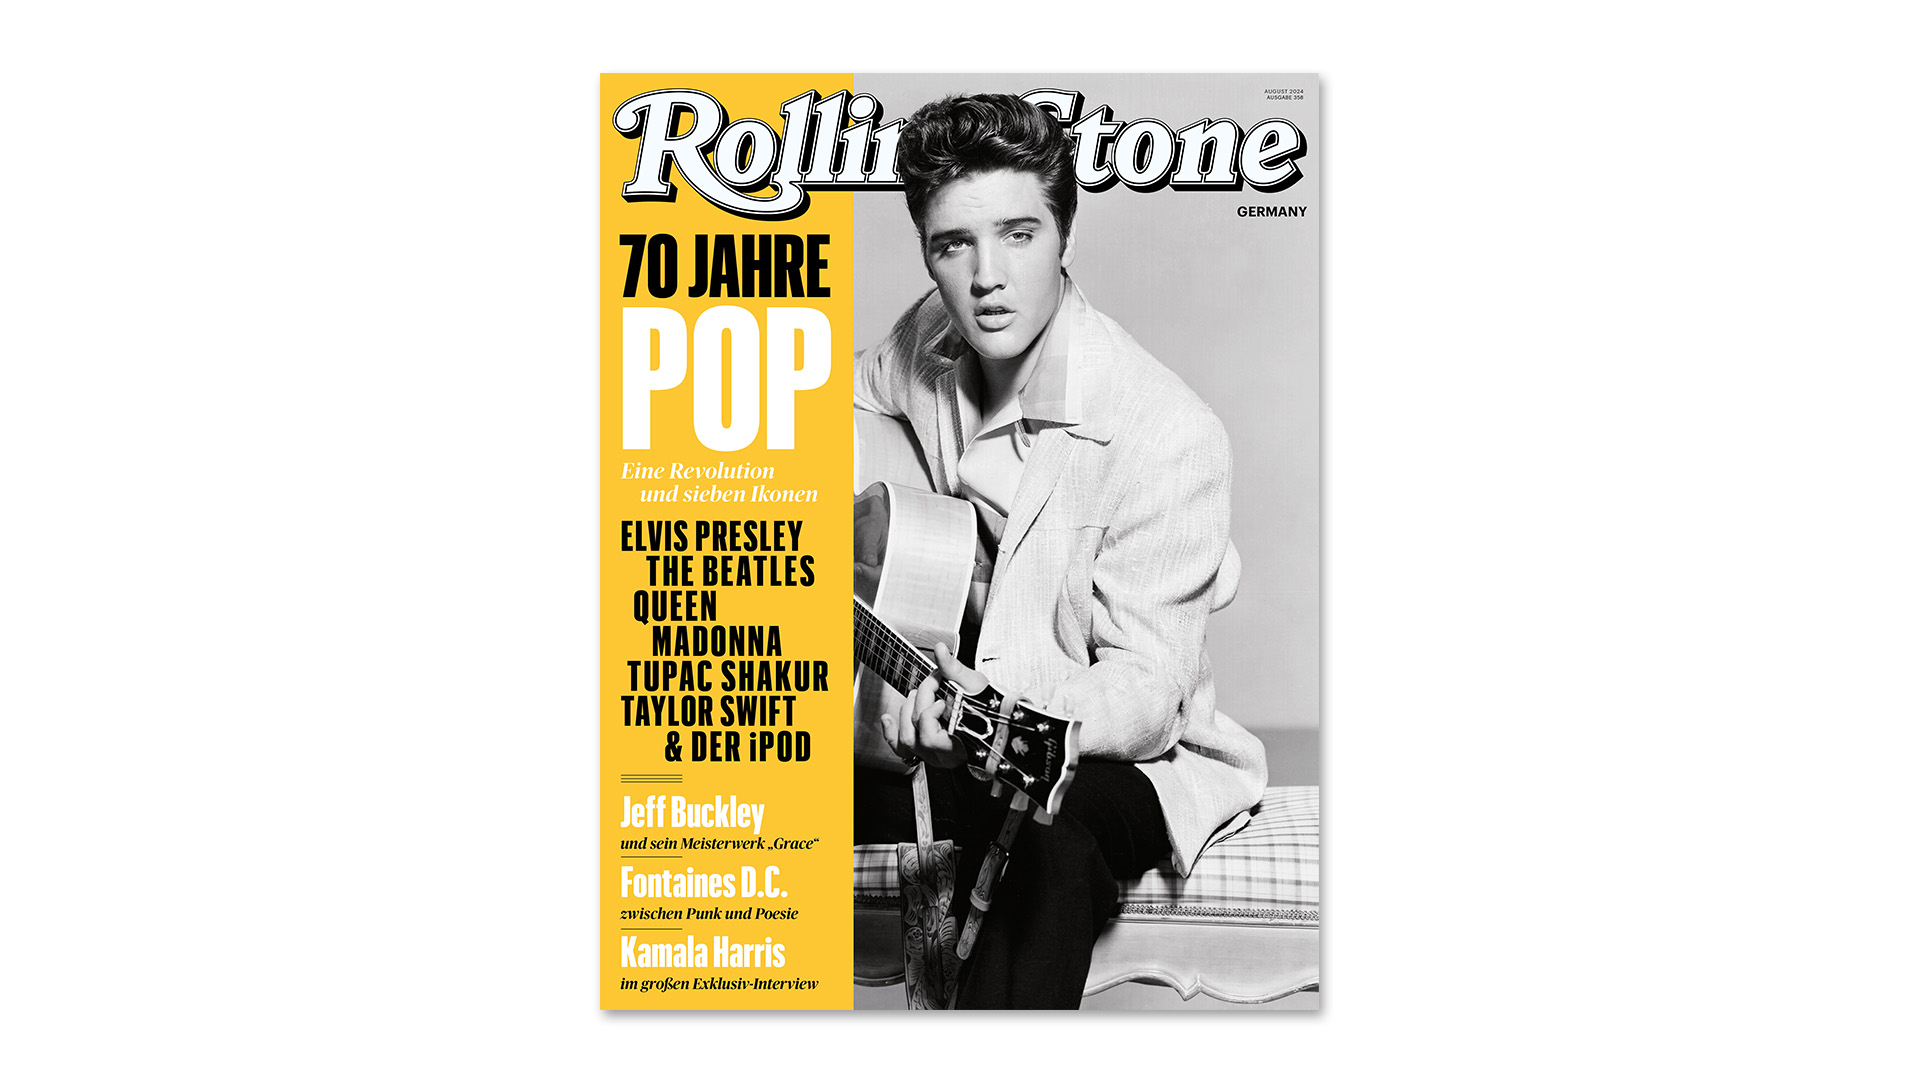 Die August-Ausgabe des ROLLING STONE mit dem Titelthema 70 Jahre Pop und Elvis Presley auf dem Cover